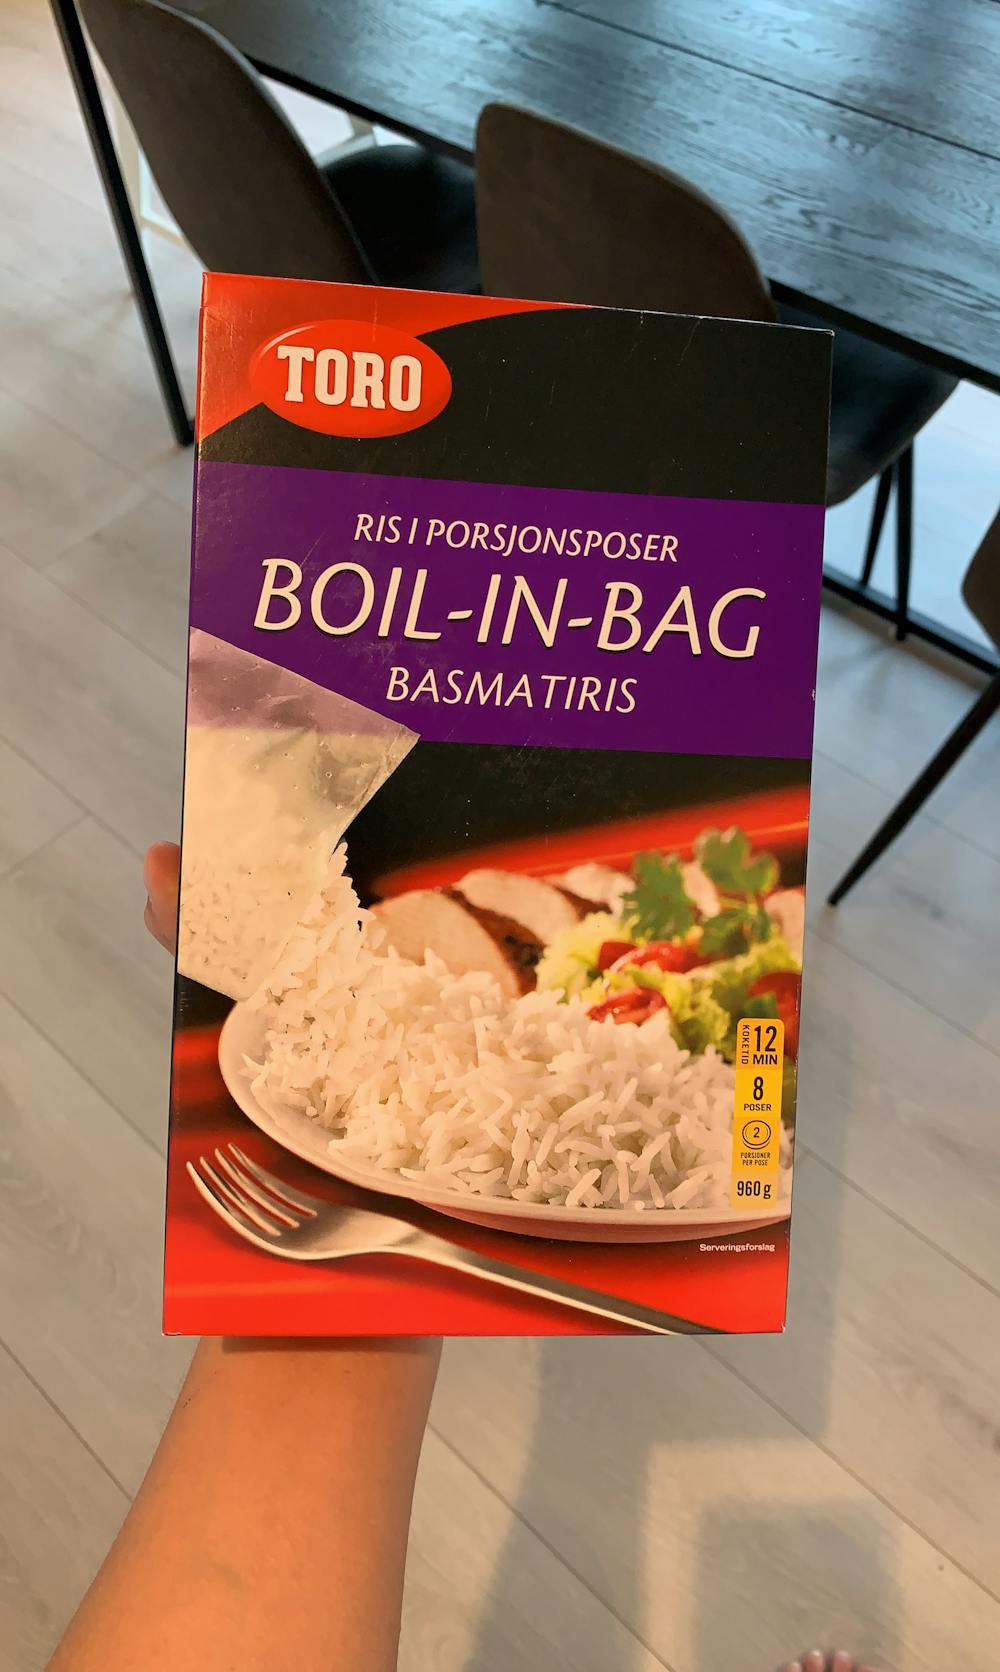 Boil-in-bag basmatiris, Toro